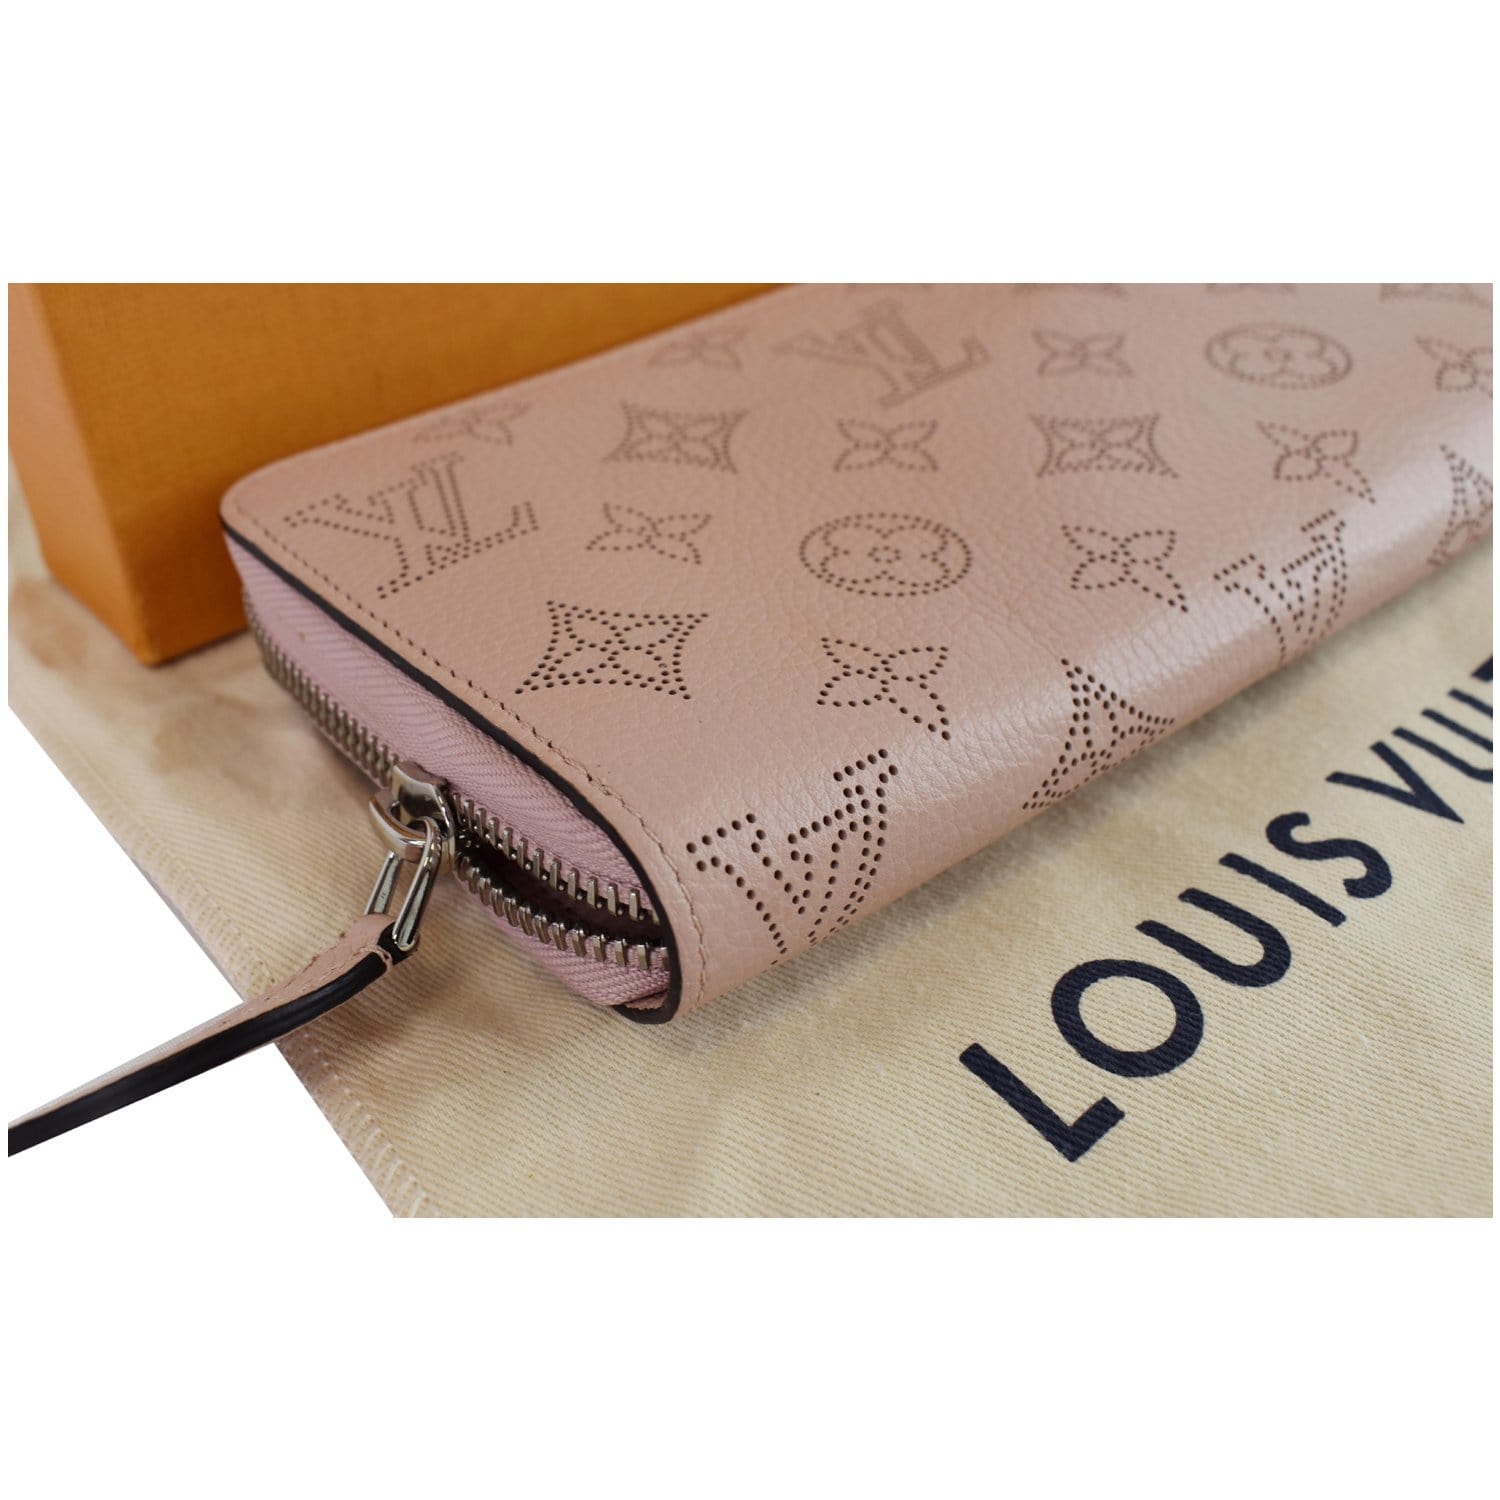 Louis Vuitton - Cléa Wallet - Leather - Magnolia - Women - Luxury